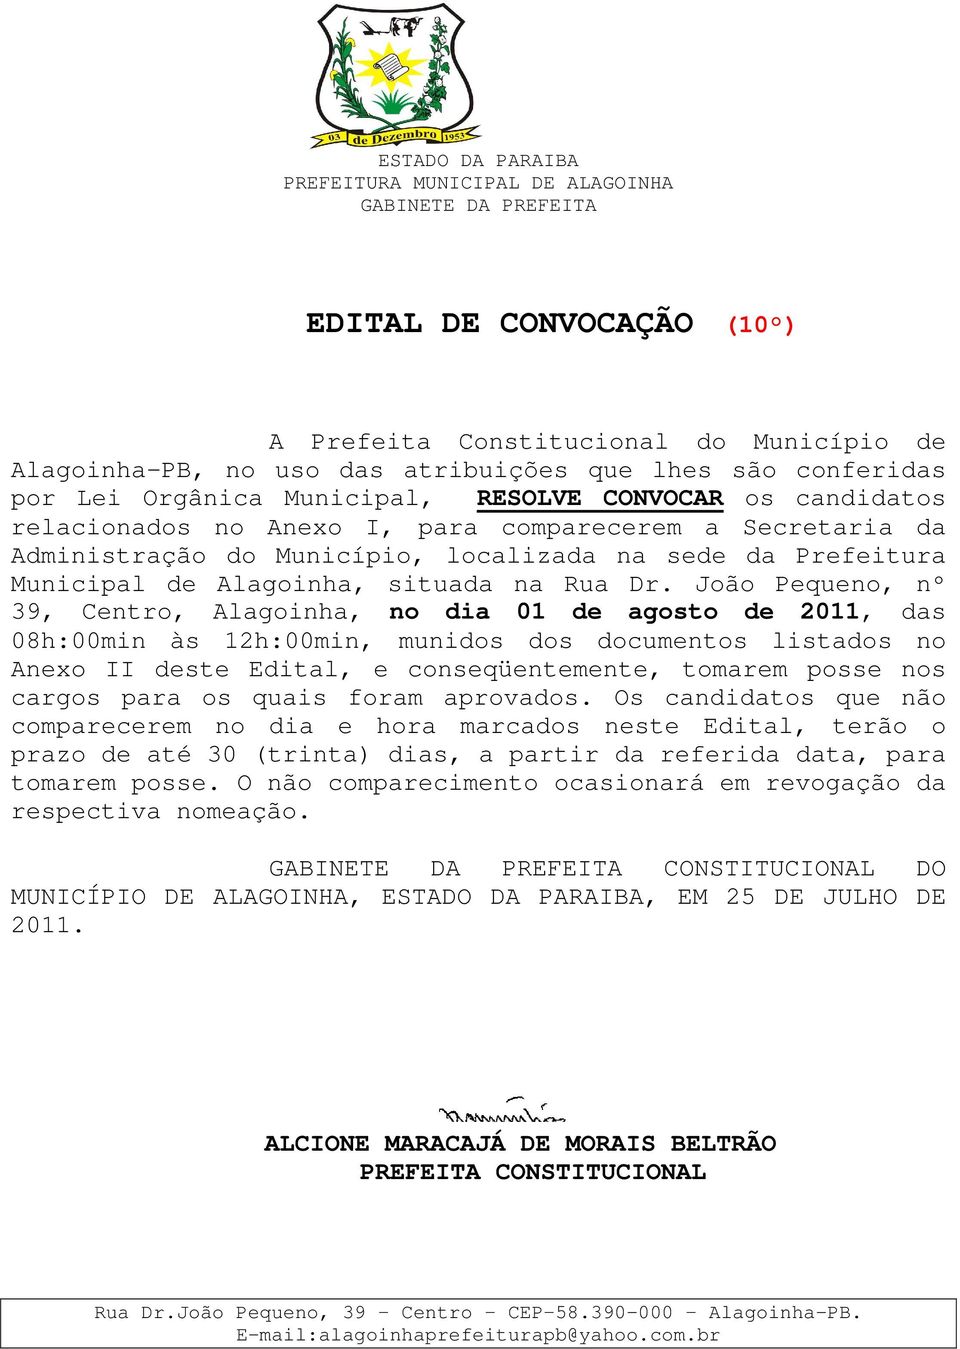 João Pequeno, nº 39, Centro, Alagoinha, no dia 01 de agosto de 2011, das 08h:00min às 12h:00min, munidos dos documentos listados no Anexo II deste Edital, e conseqüentemente, tomarem posse nos cargos